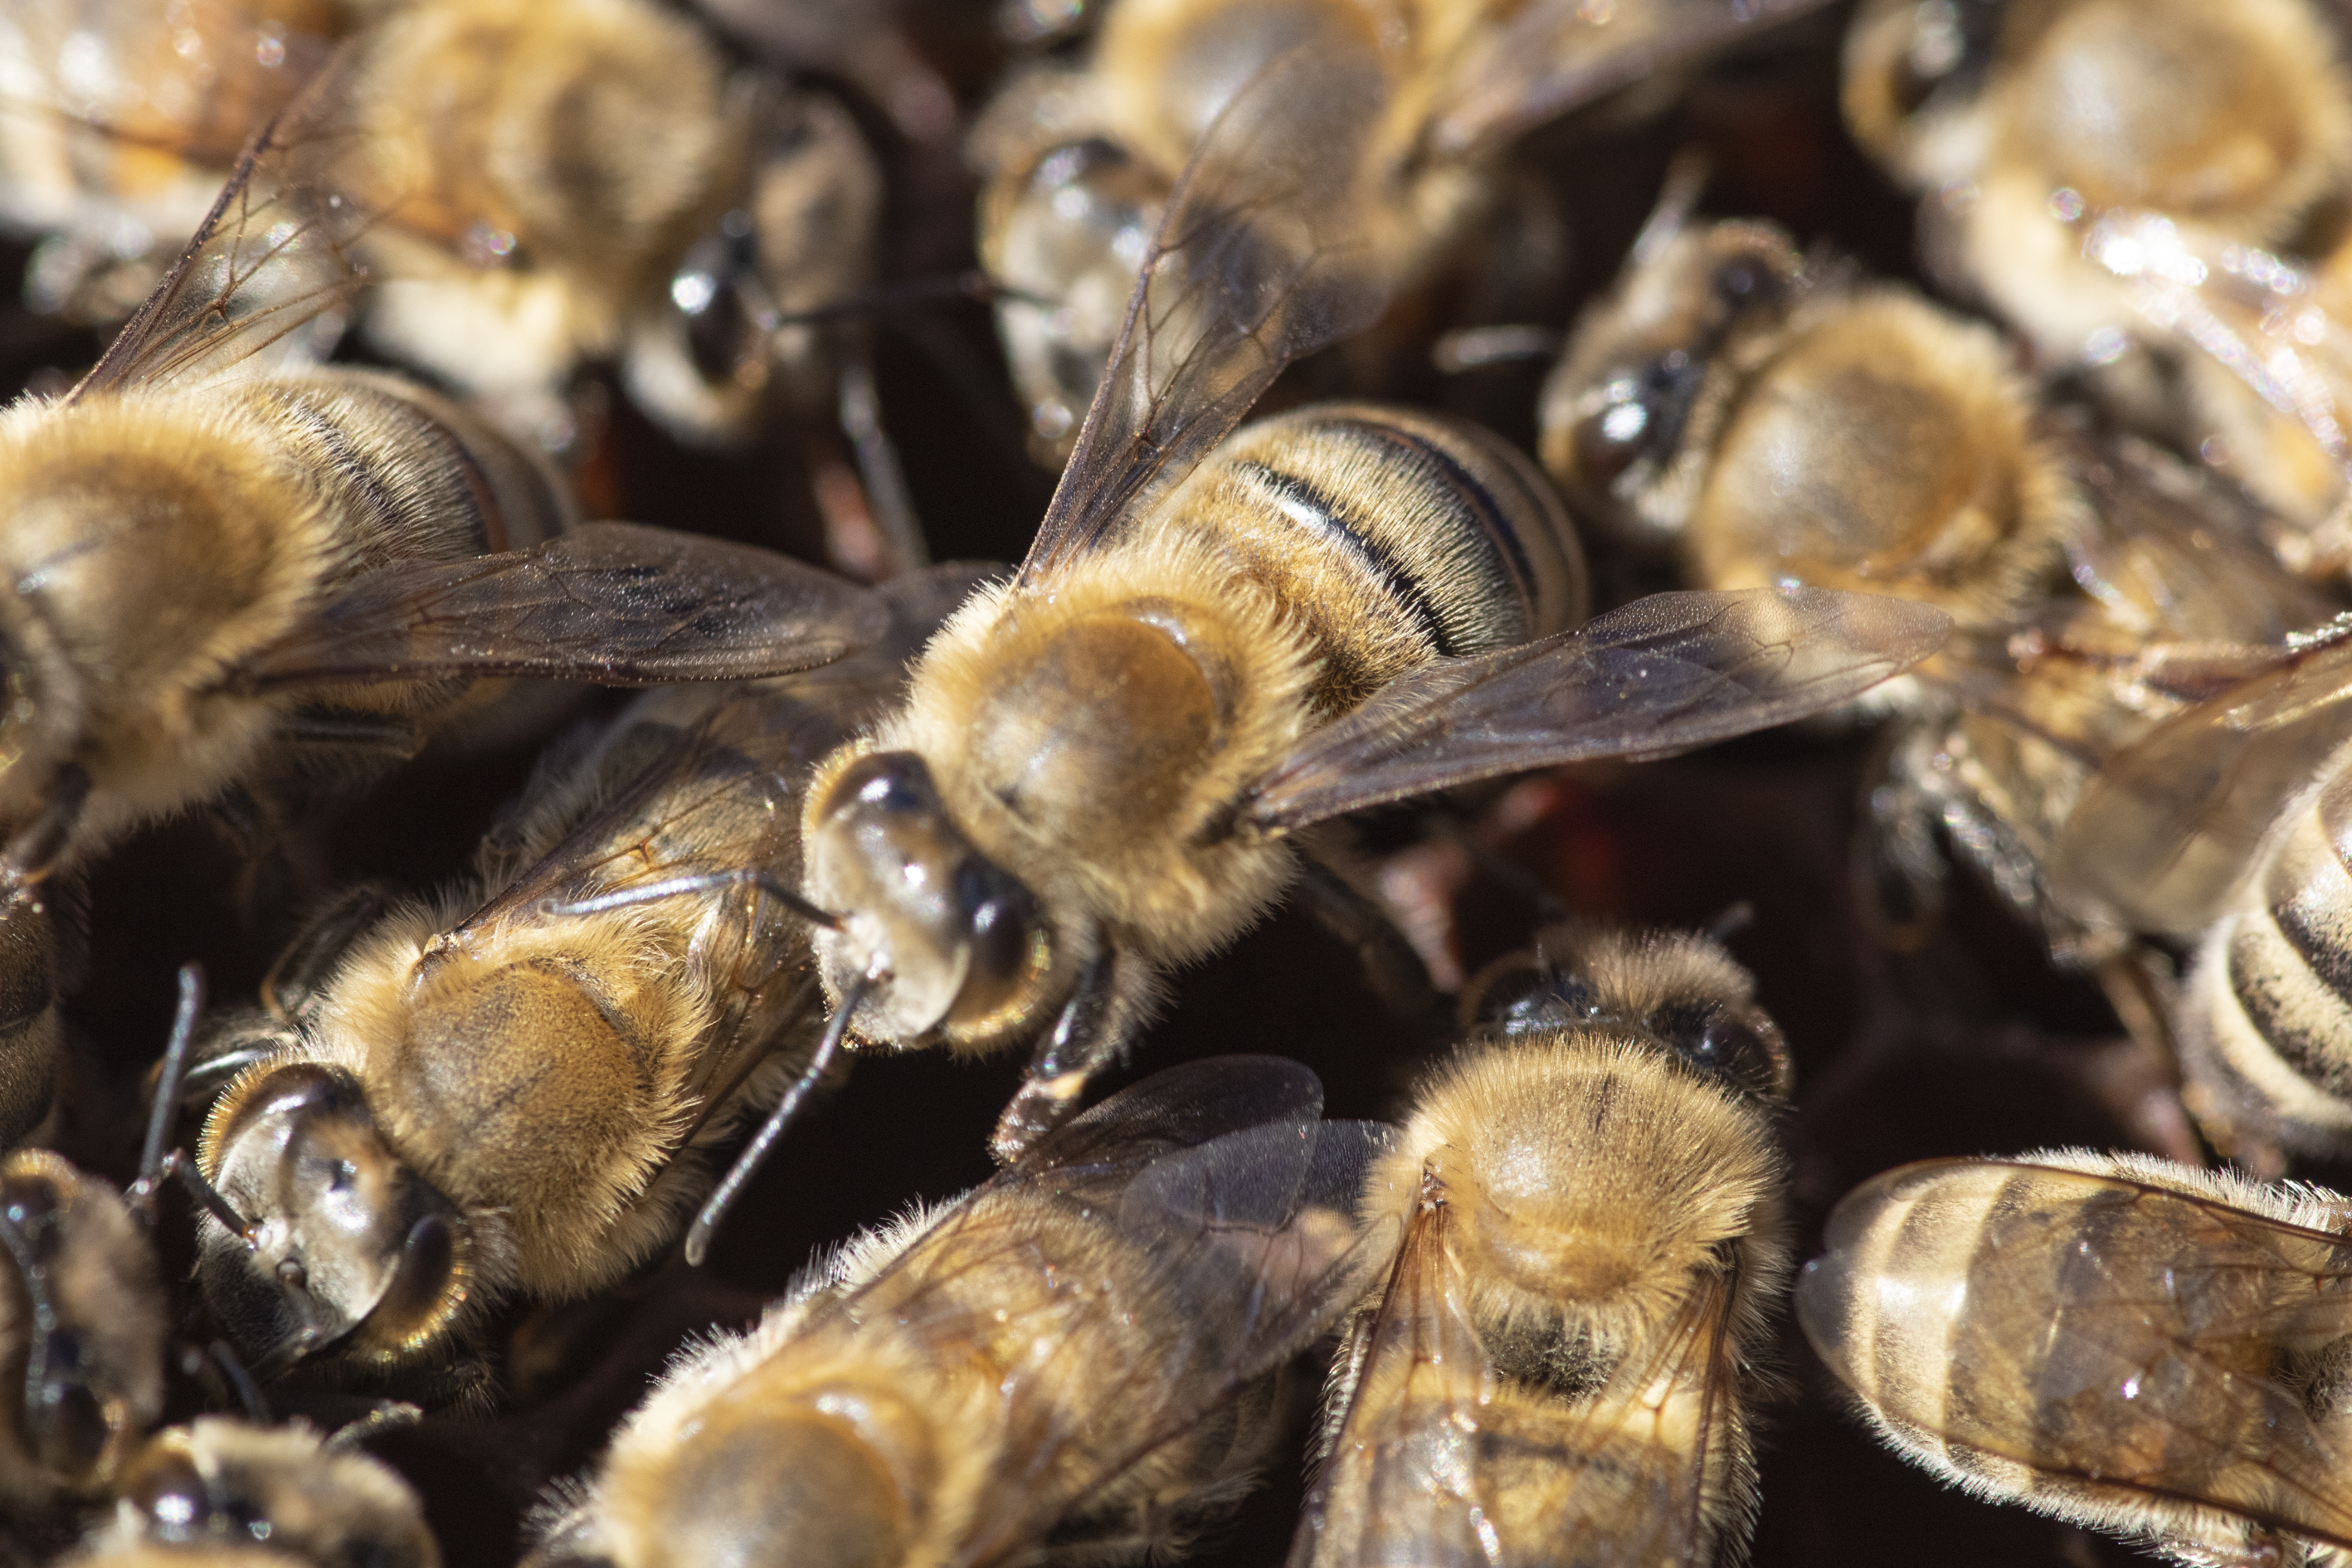 Méhek támadtak meg két méhészt Szlovéniában, egy férfi meghalt